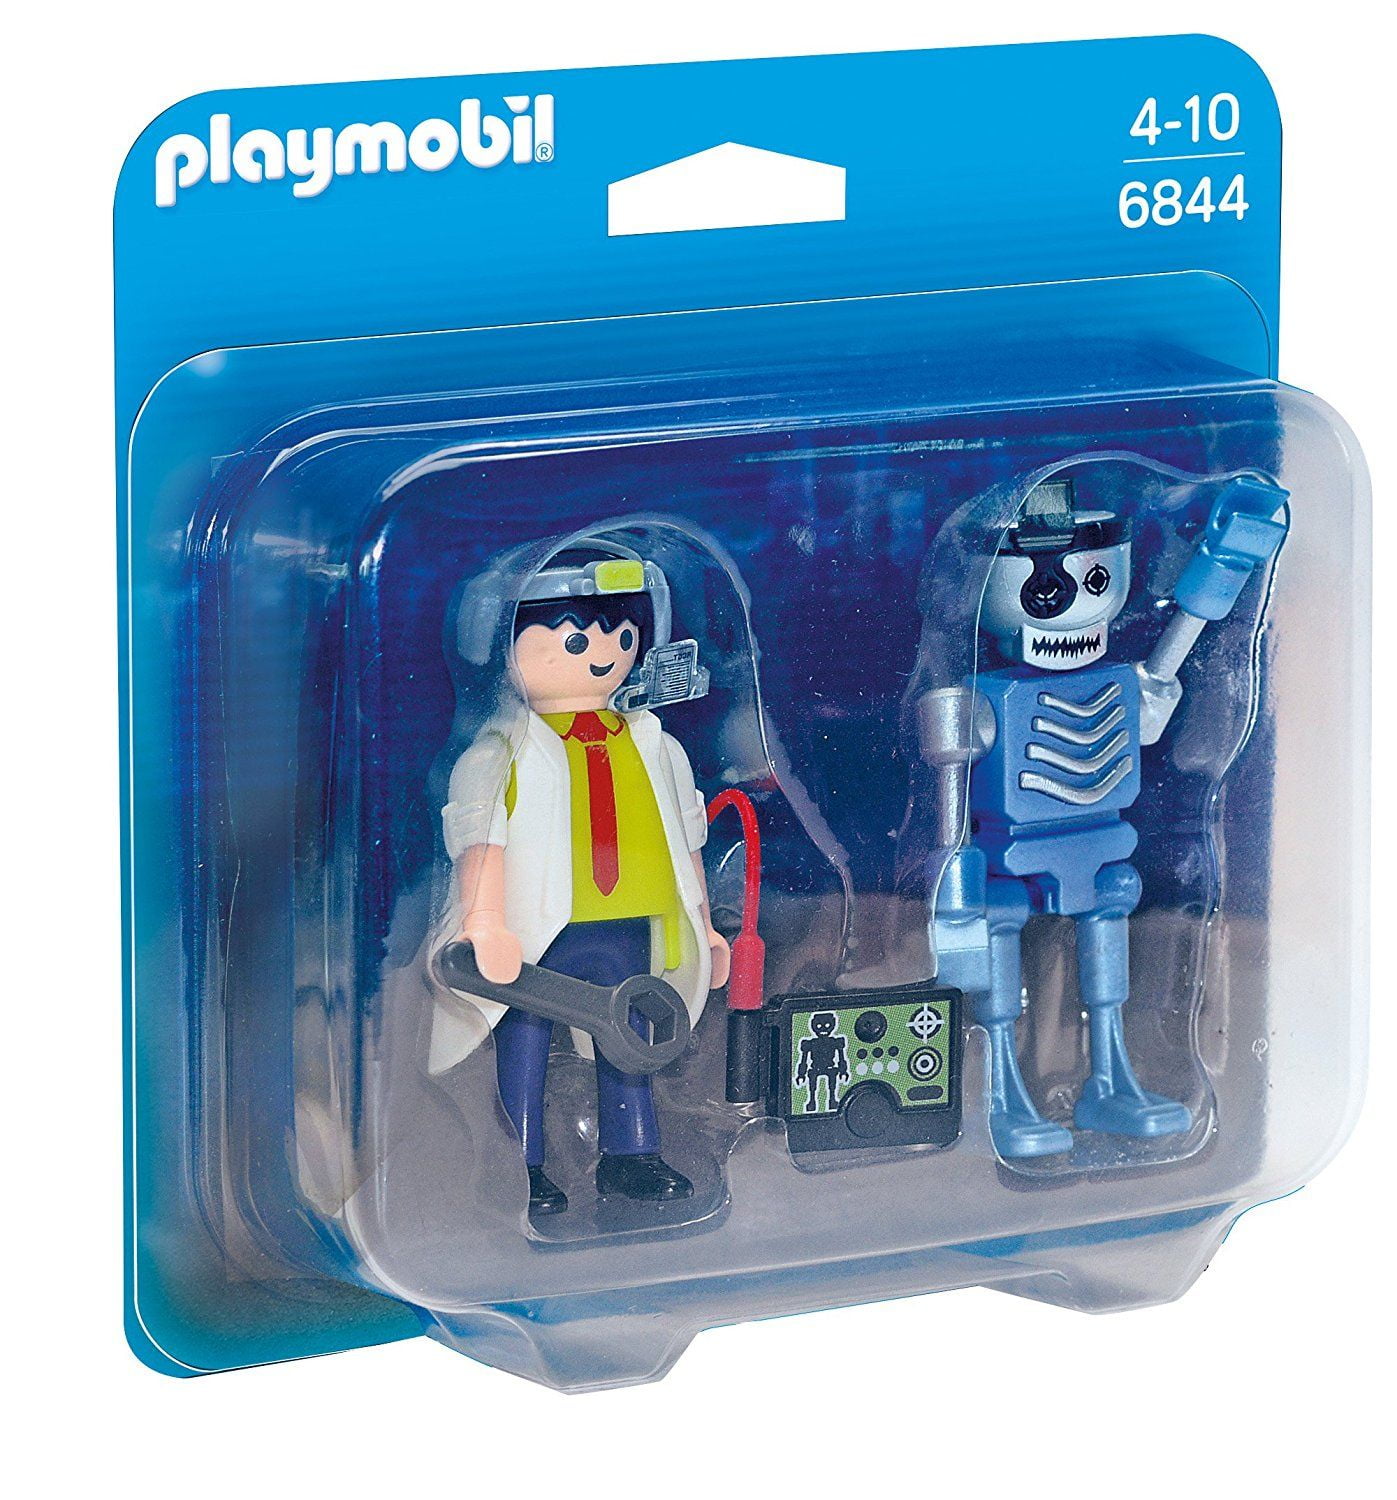 Riskeren temperen vogel Scientist & Robot Duo Pack - Imaginative Play Set by Playmobil (6844) -  Walmart.com